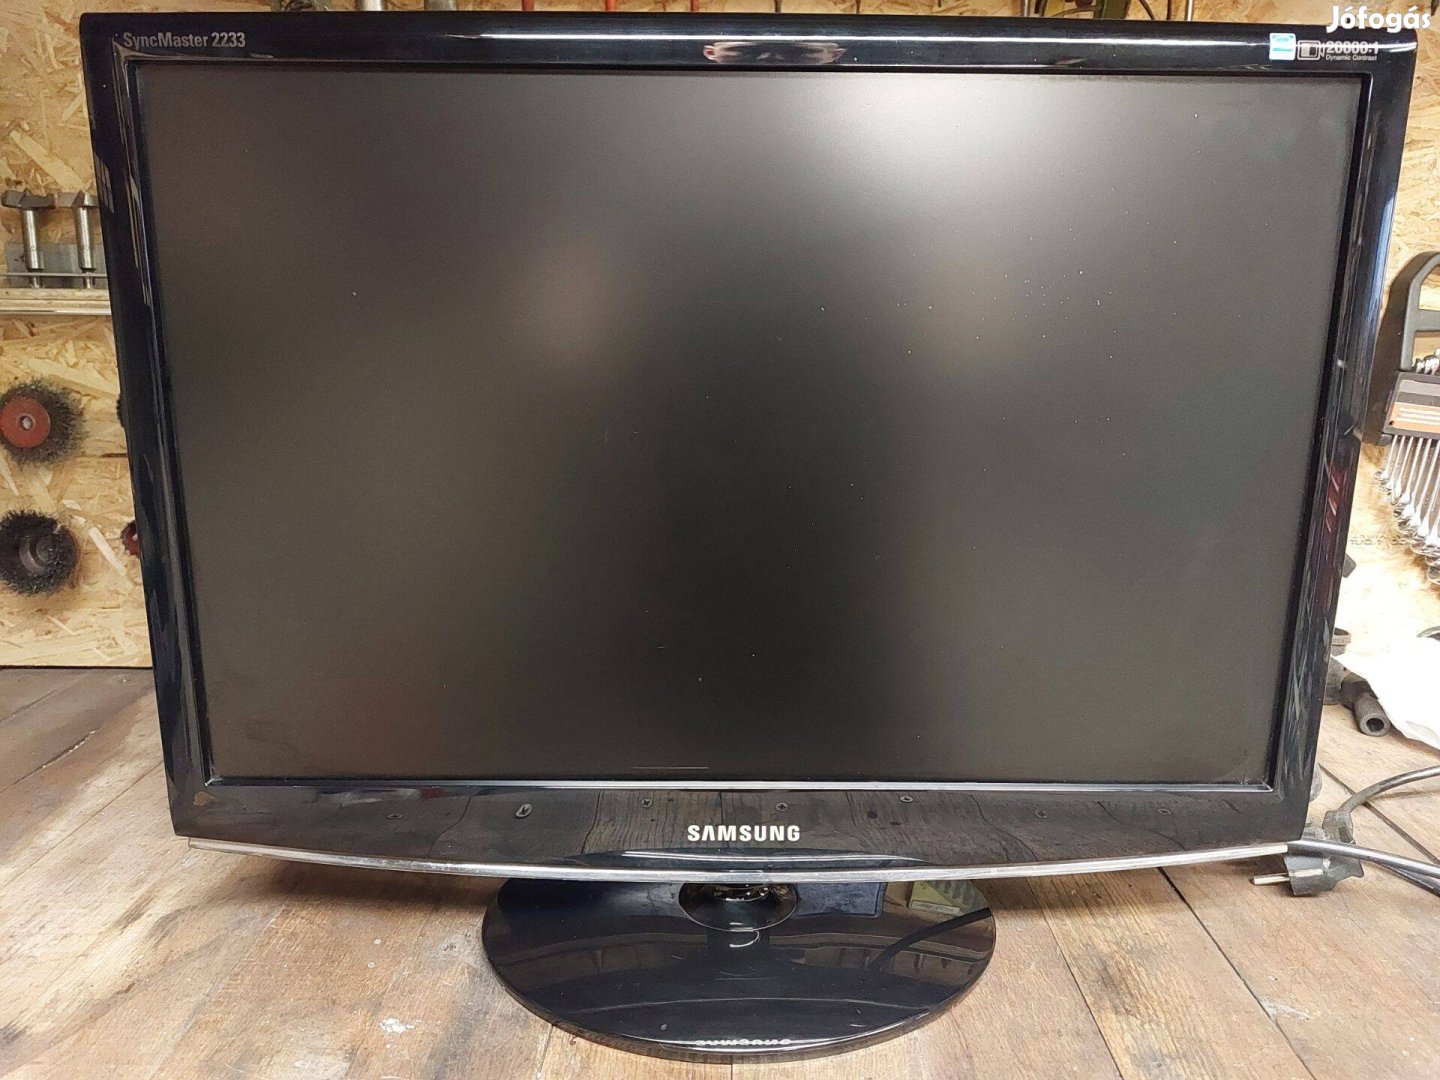 Samsung 2233BW 22" LCD monitor